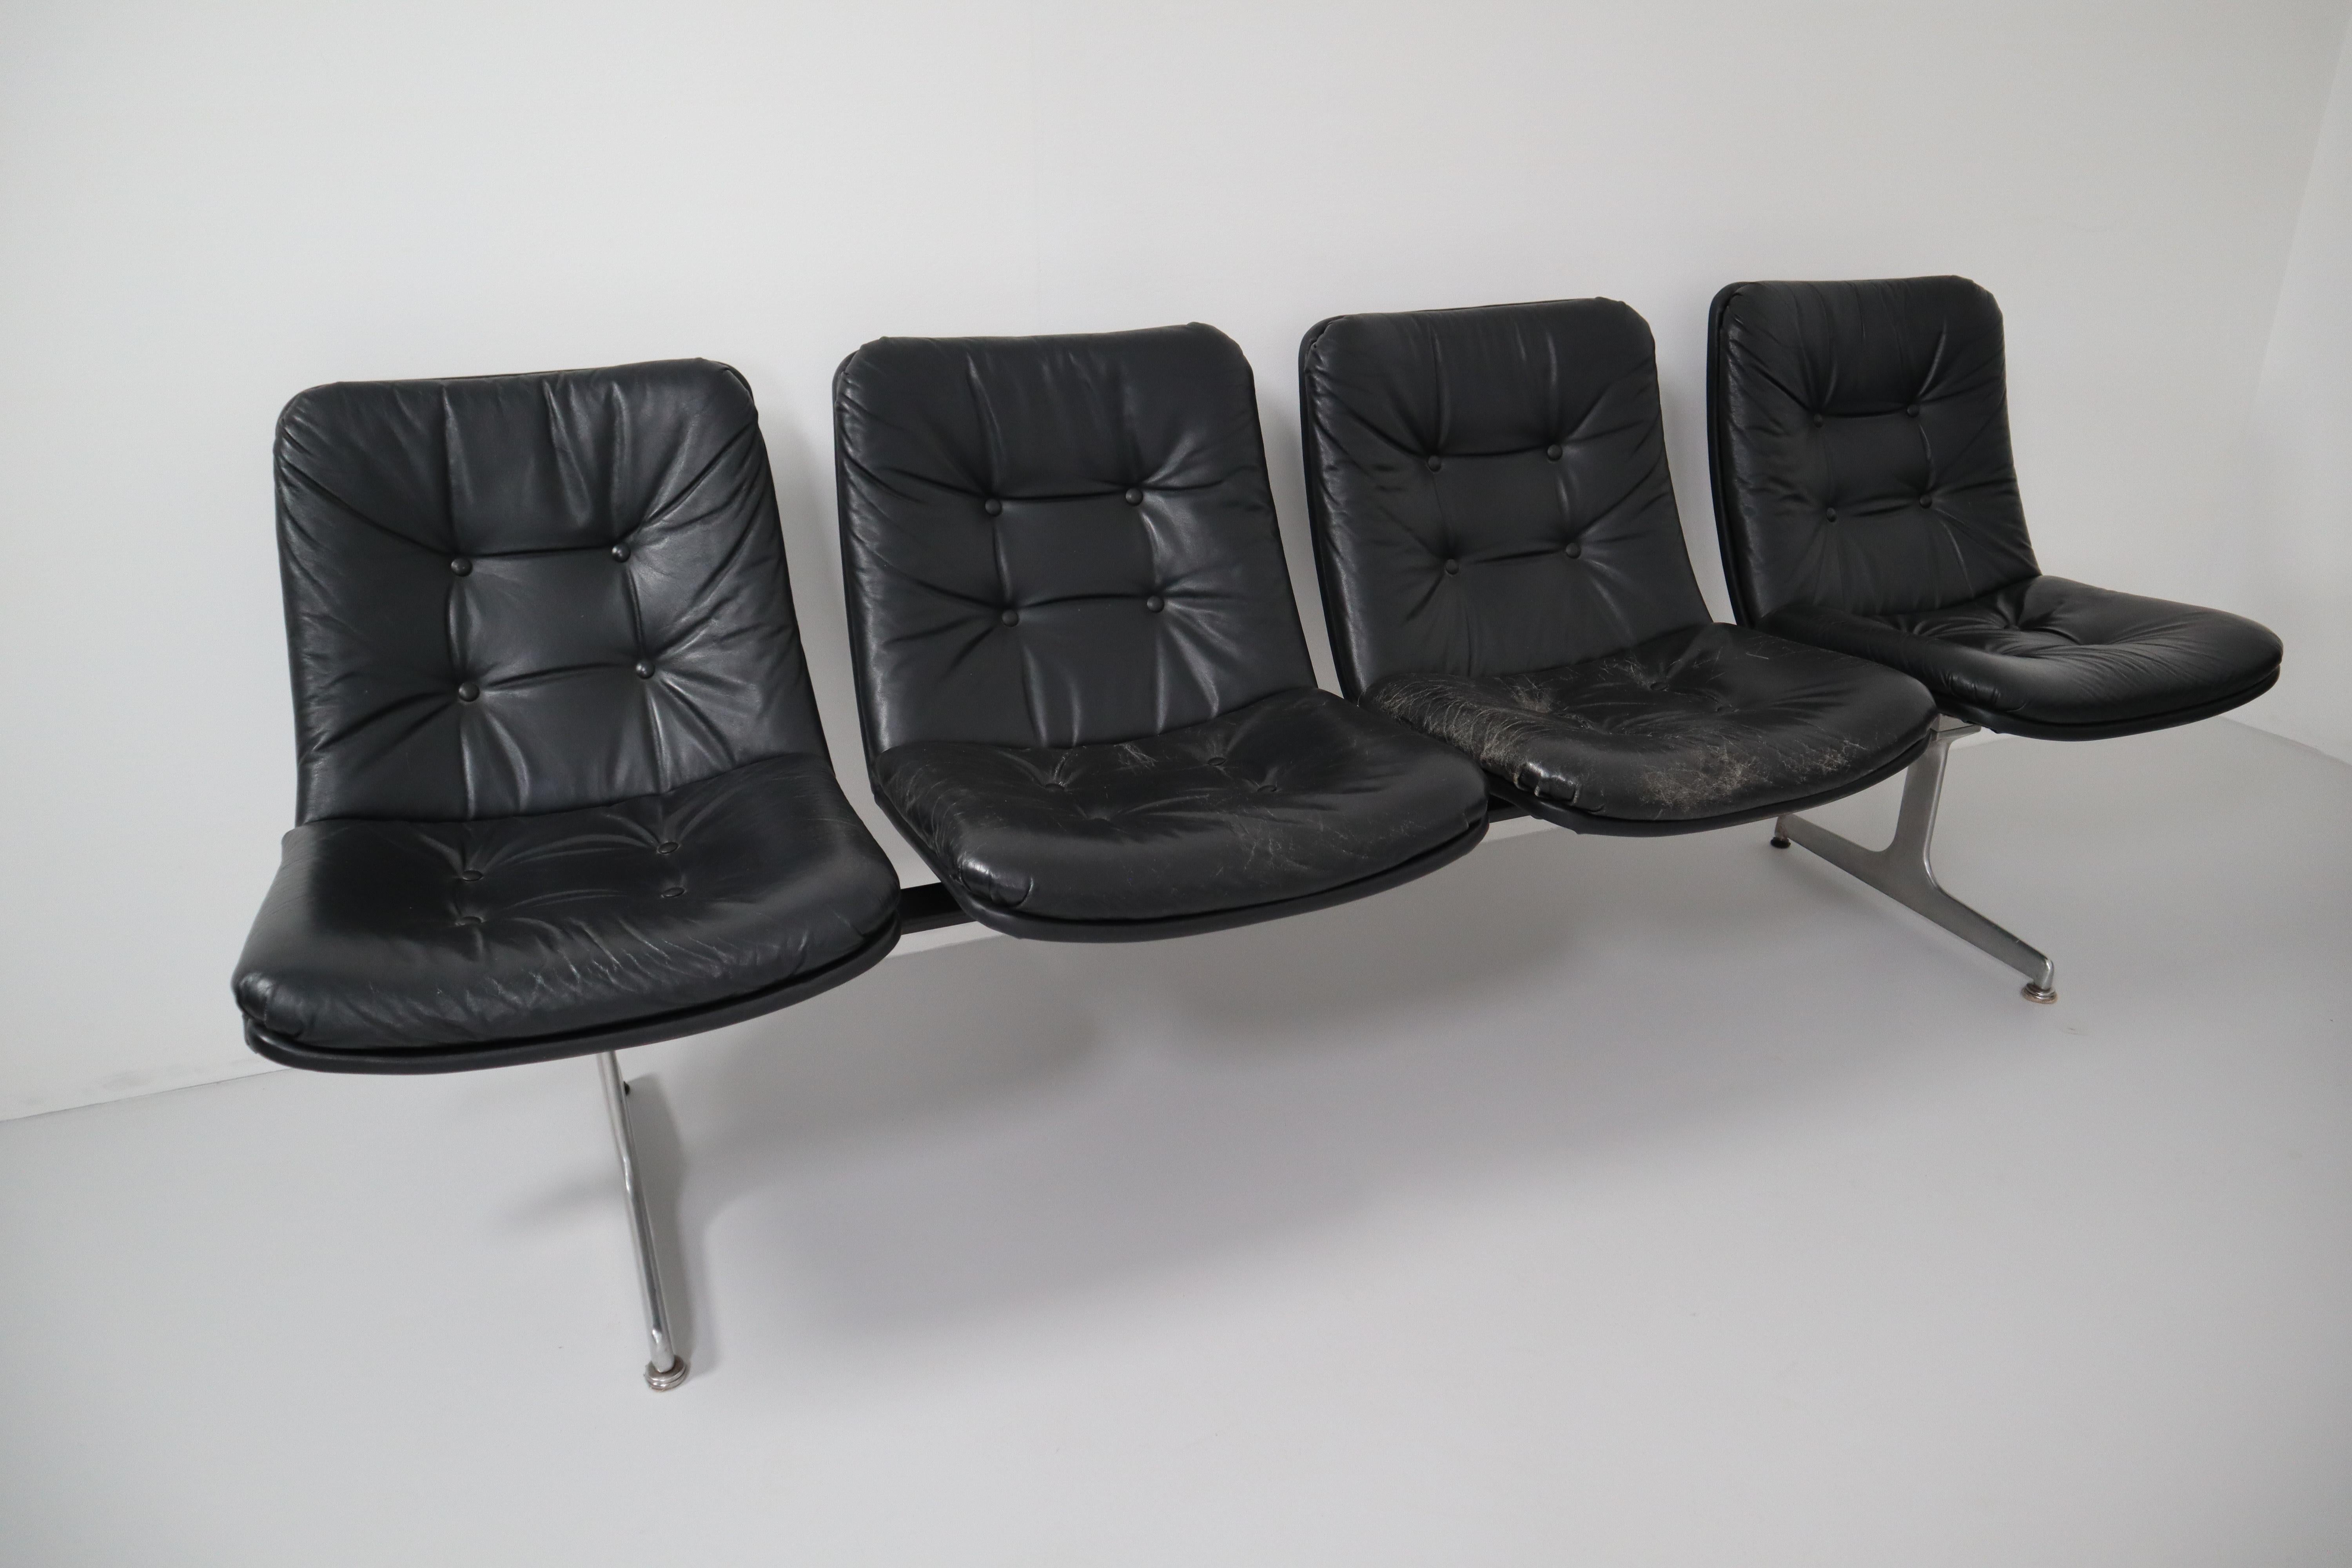 Geoffrey Harcourt Waiting Room Multiple Seating System für Artifort, 1960er Jahre (Moderne der Mitte des Jahrhunderts)